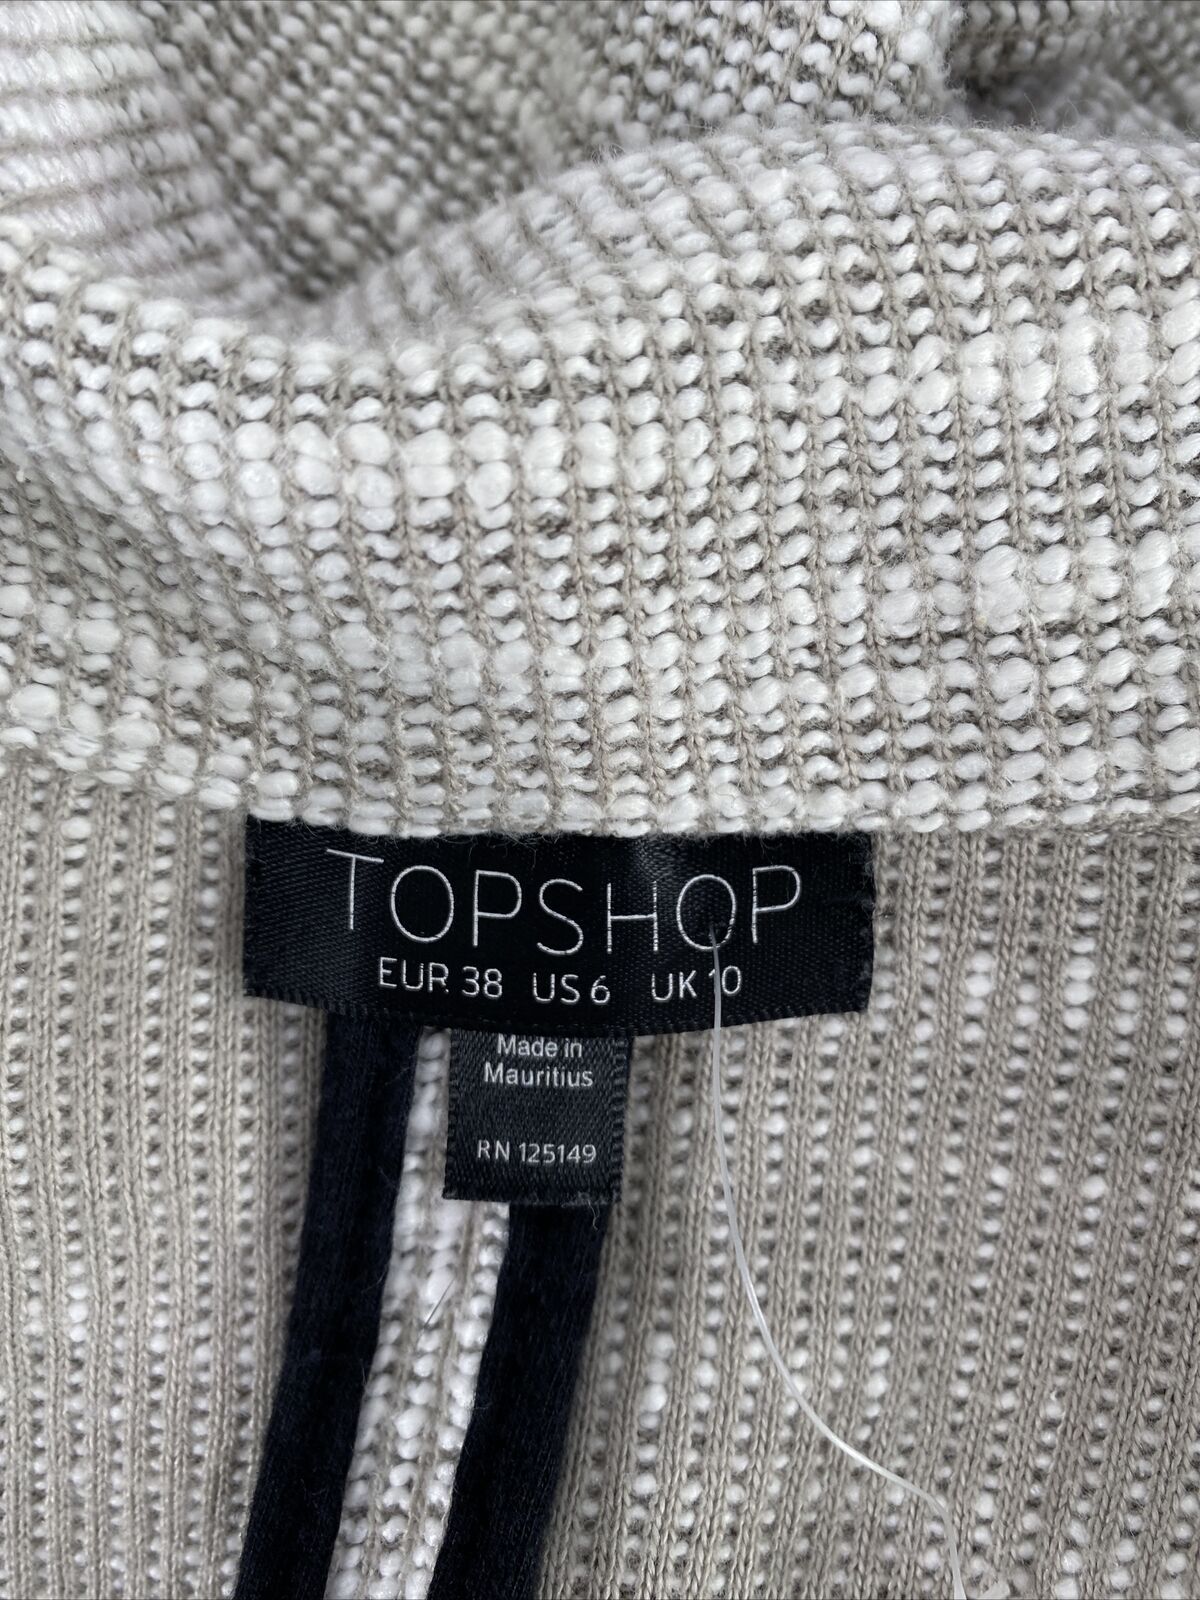 Topshop Chaqueta tipo suéter abierto de manga larga para mujer, color blanco/gris, 6